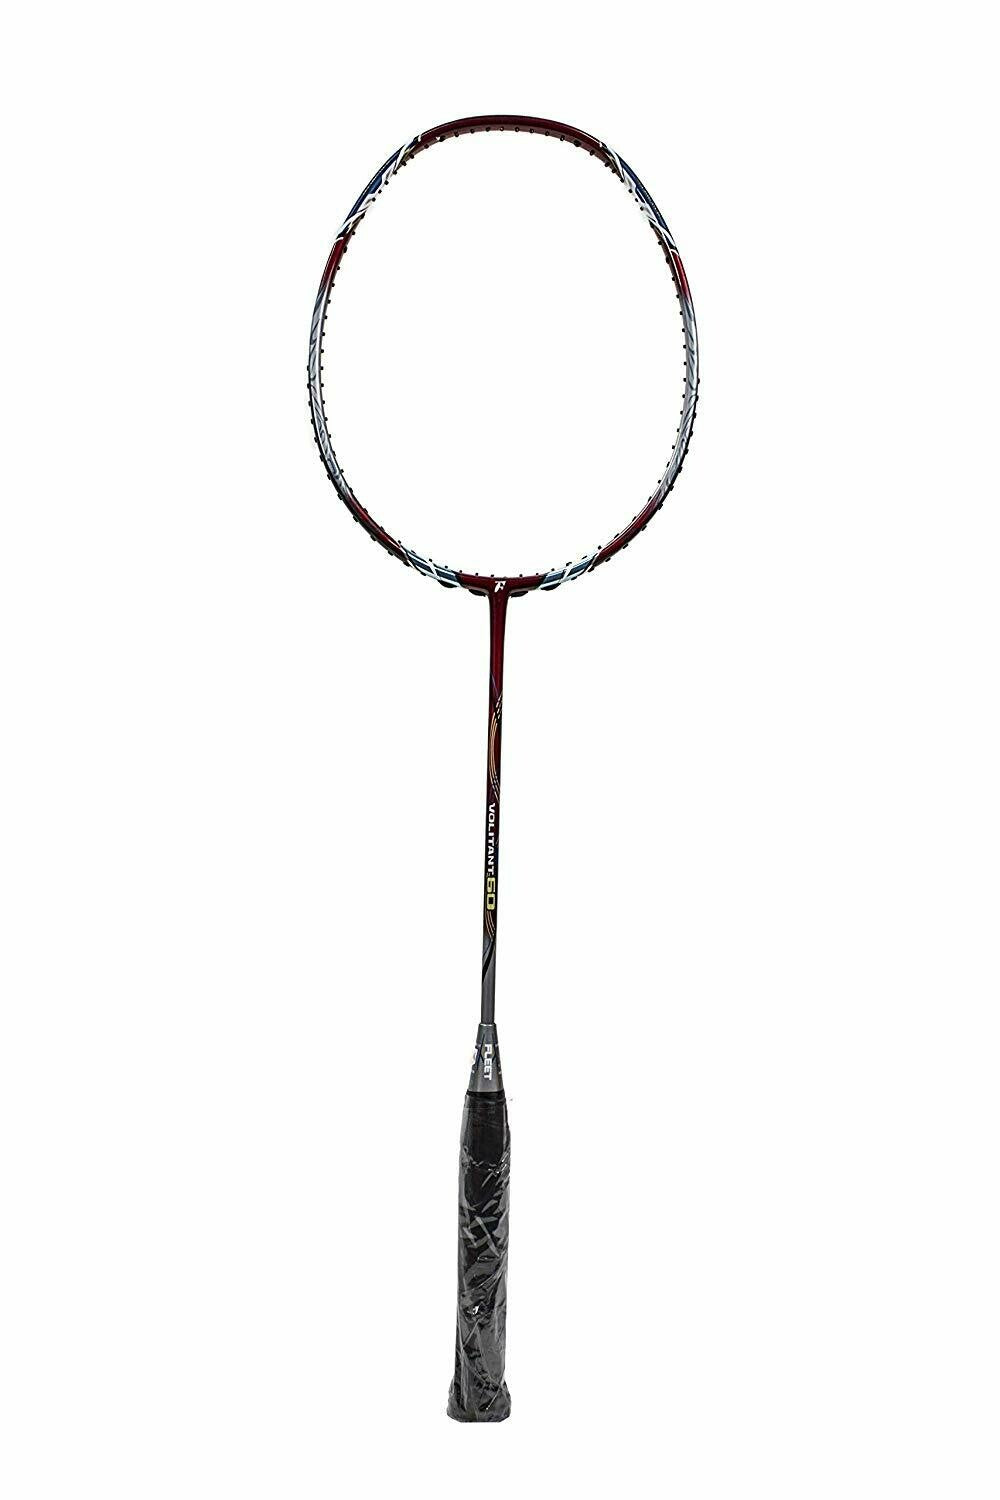 Fleet Volitant 60 Badminton Racket